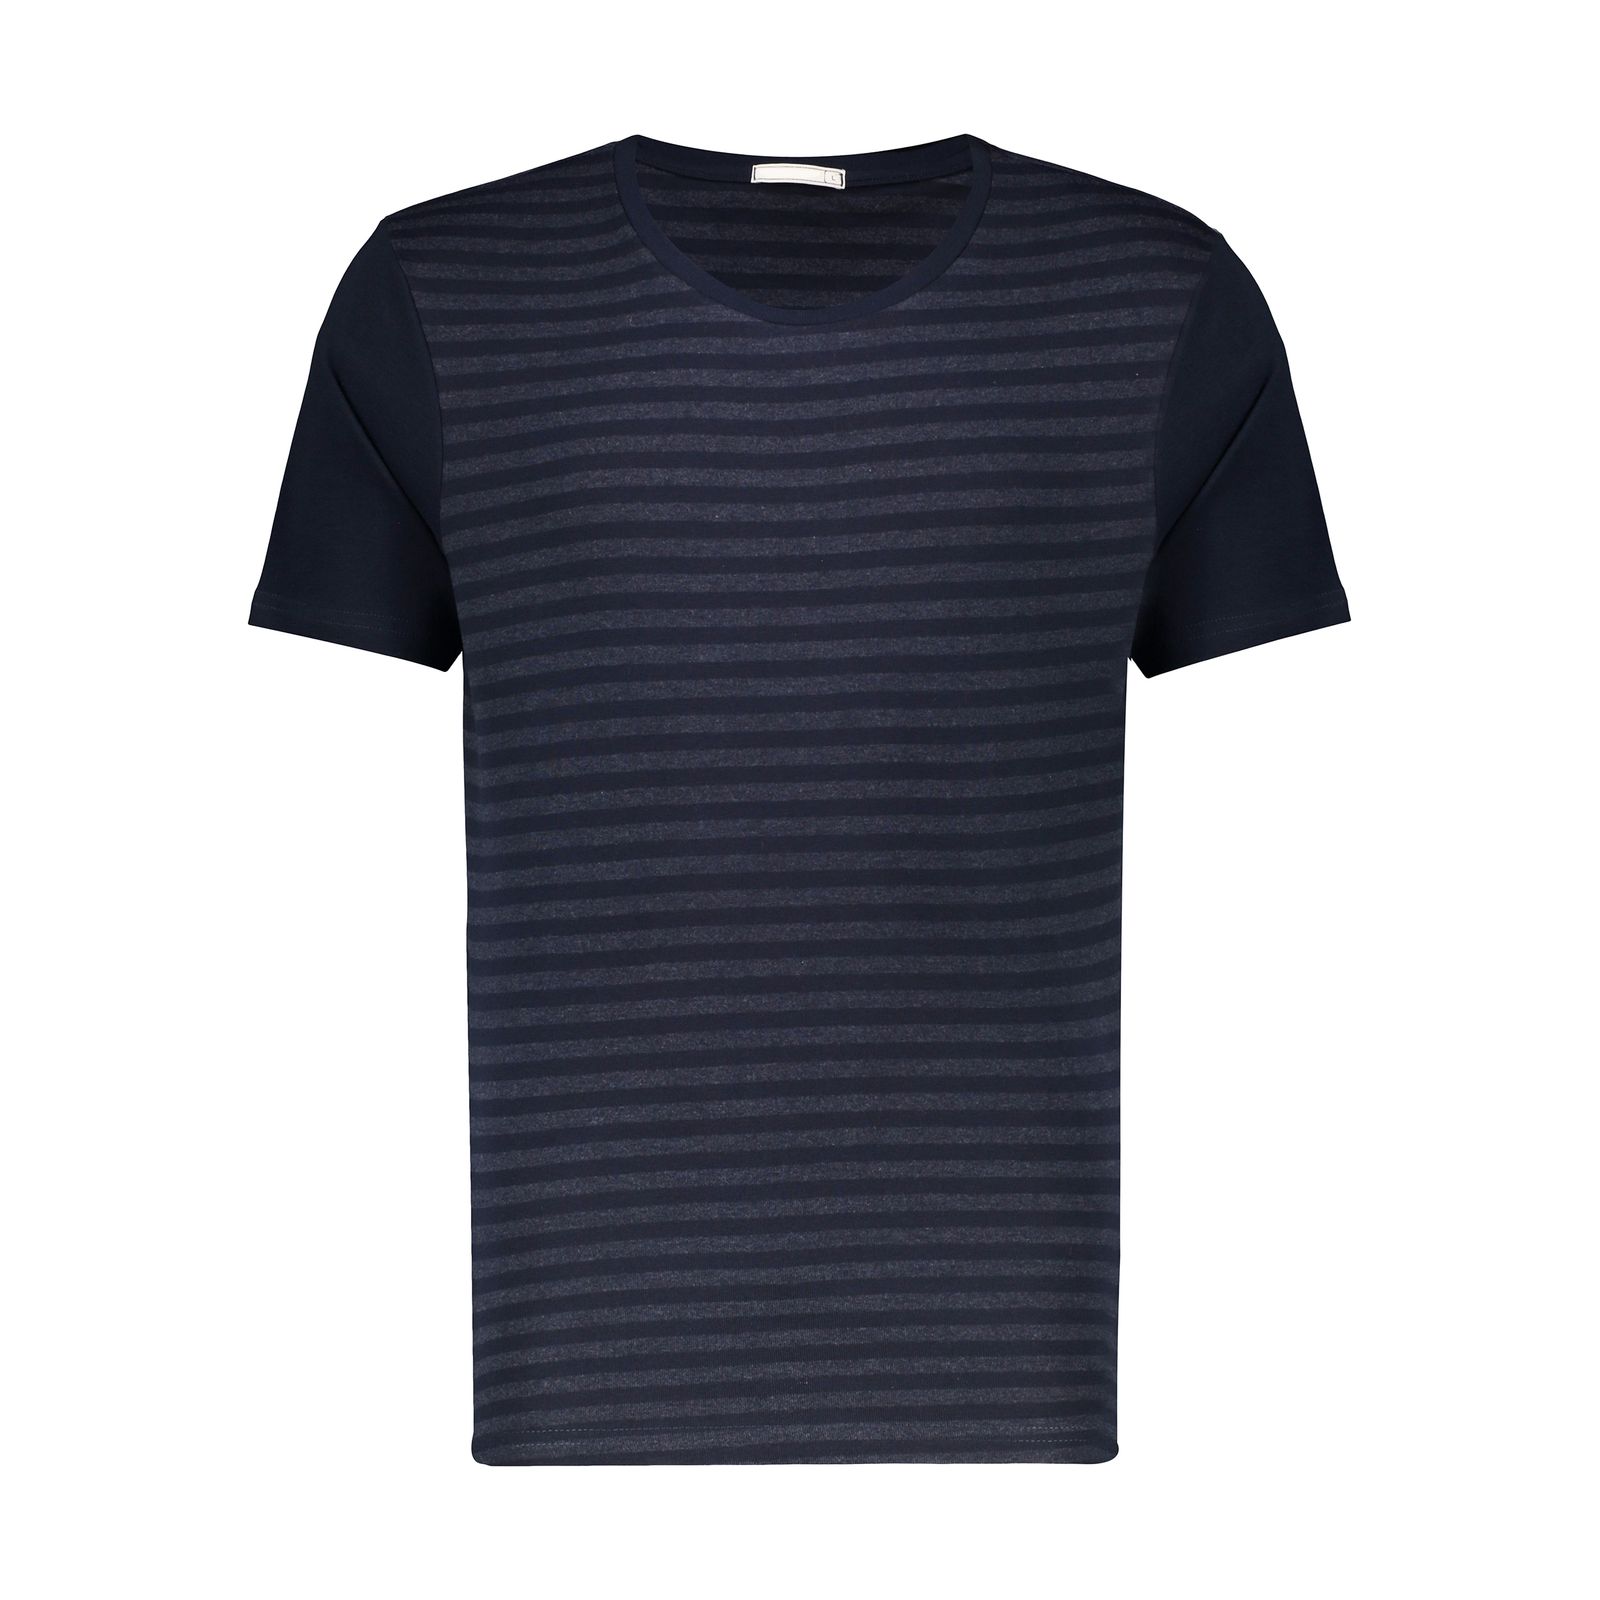 تی شرت آستین کوتاه مردانه دیجی استایل اسنشیال مدل 249112359 -  - 5